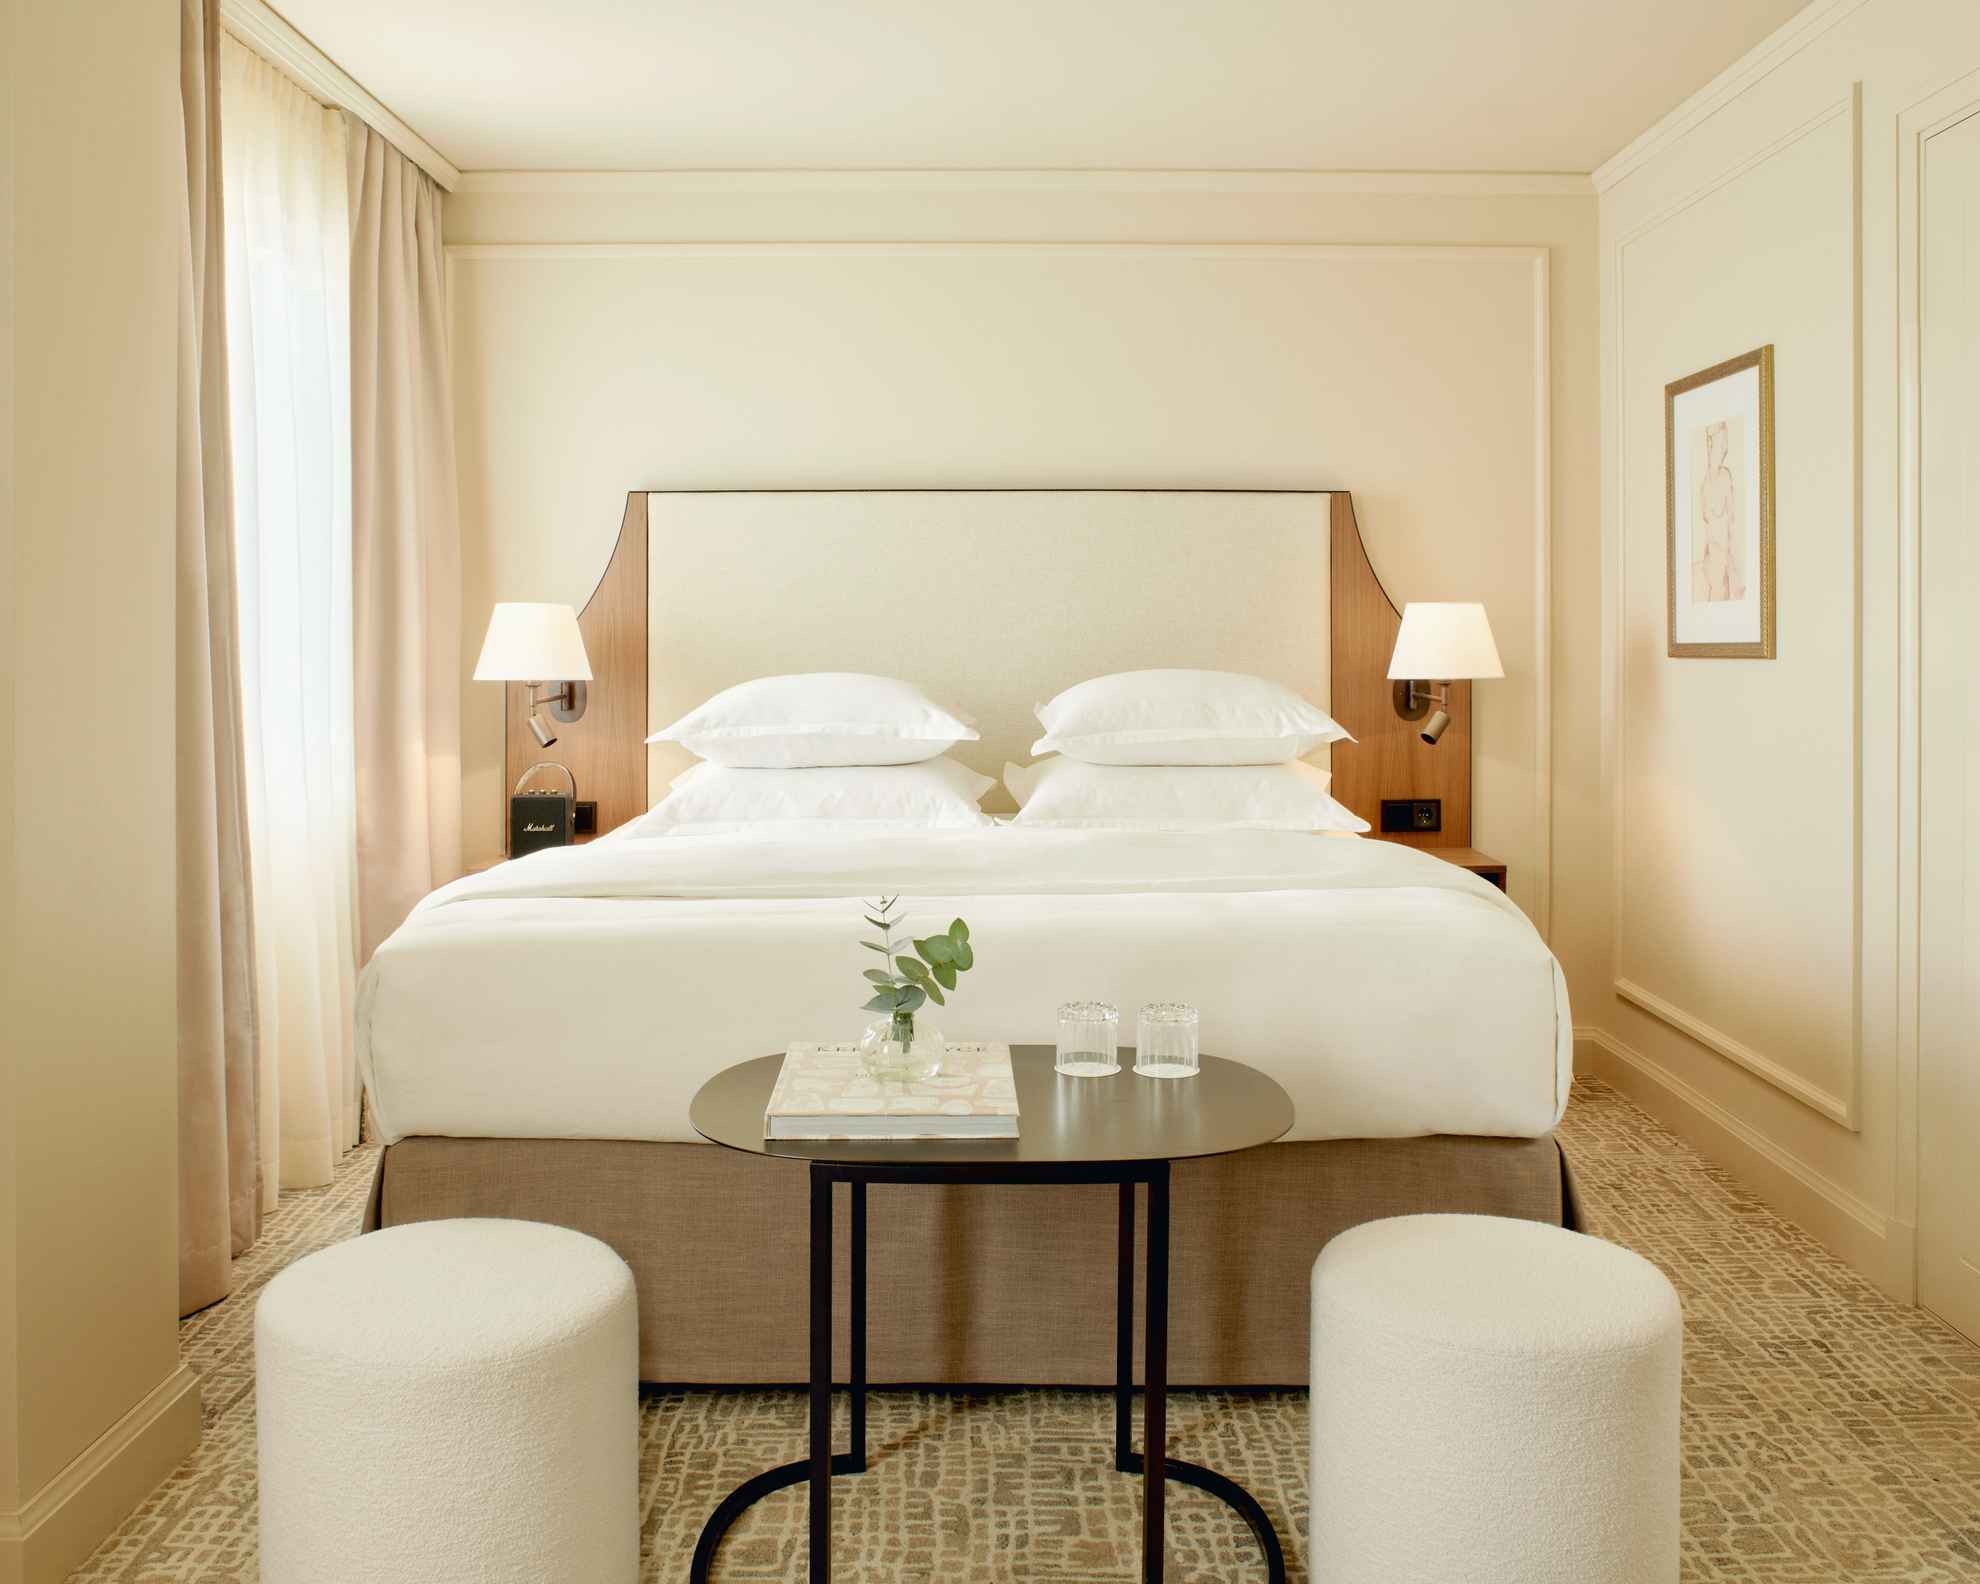 Hotelkamer in Villa Dahlia. De kamer heeft lichtgekleurde muren, een tweepersoonsbed, een donker tafeltje en twee witte zitkussens.